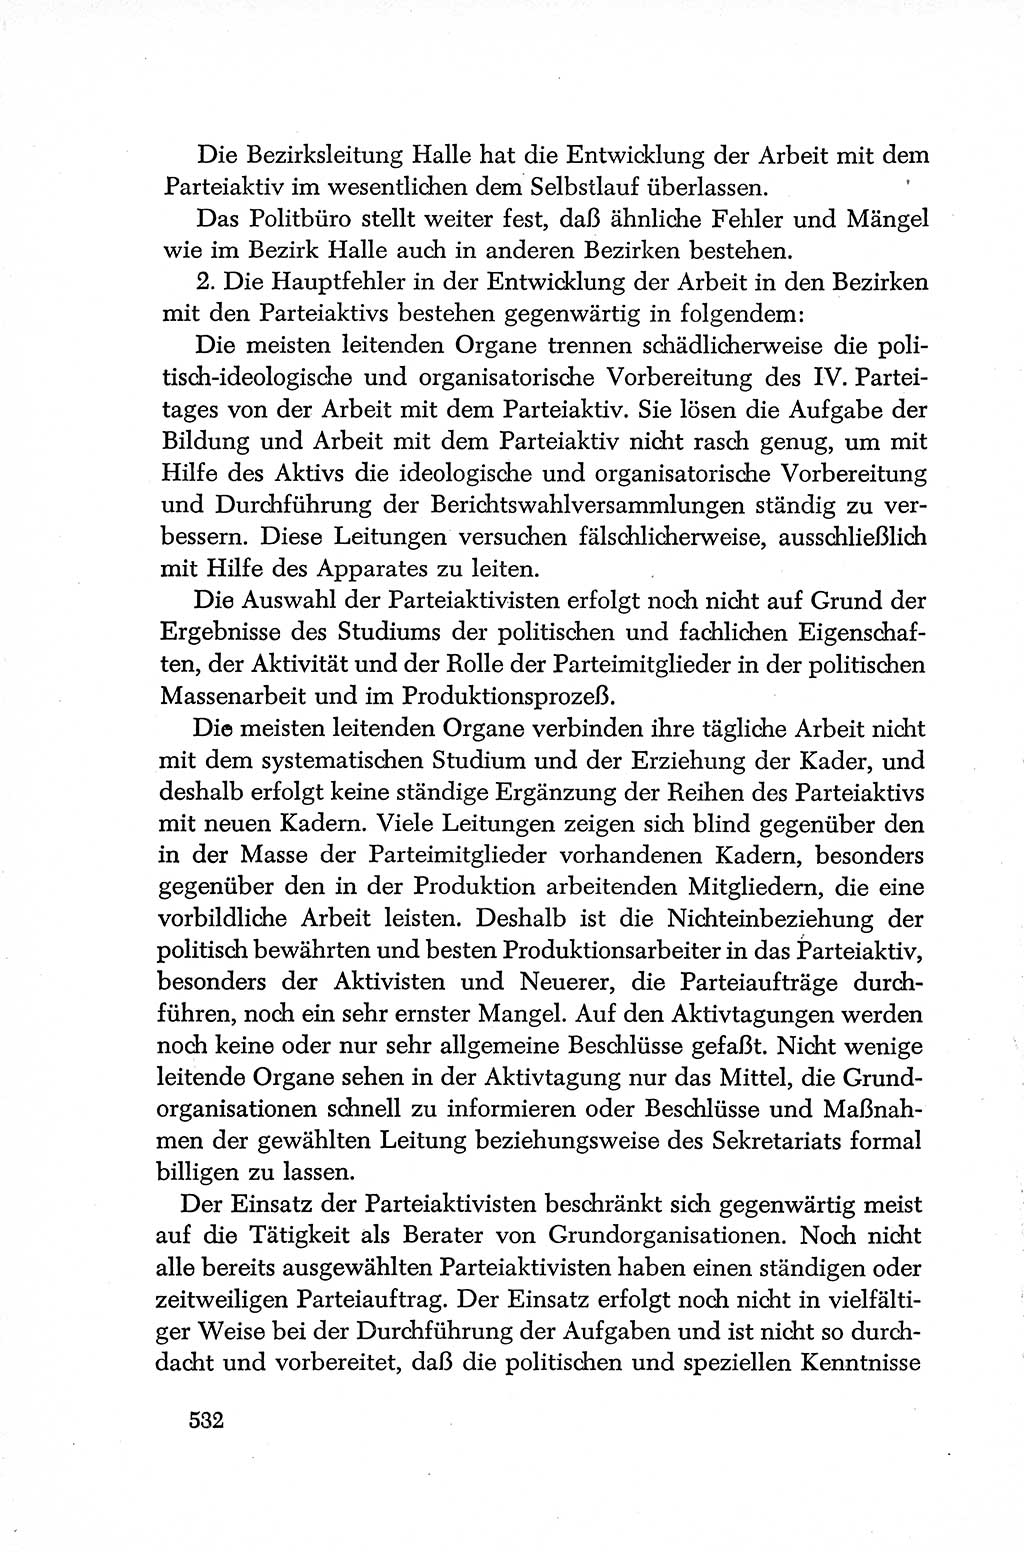 Dokumente der Sozialistischen Einheitspartei Deutschlands (SED) [Deutsche Demokratische Republik (DDR)] 1952-1953, Seite 532 (Dok. SED DDR 1952-1953, S. 532)